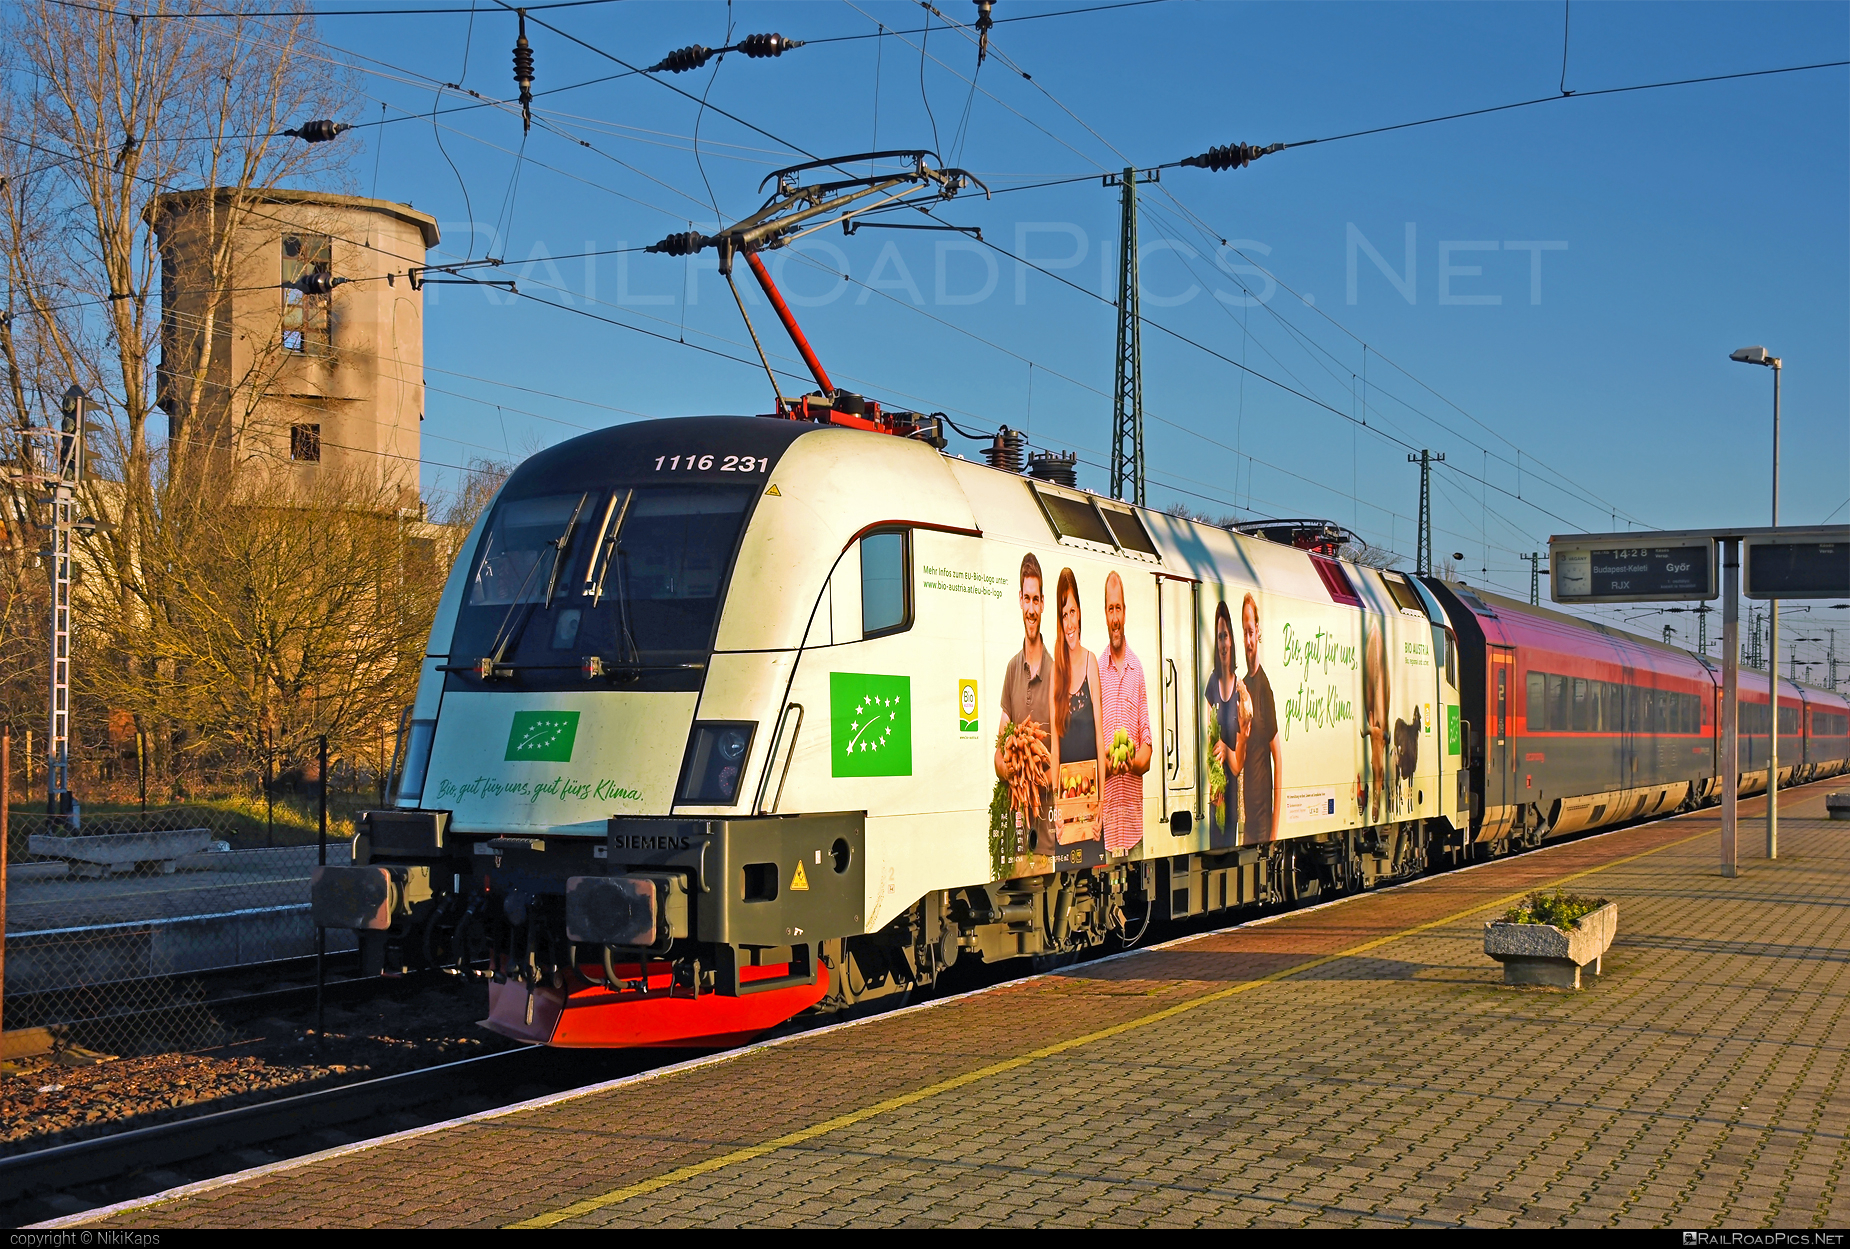 Siemens ES 64 U2 - 1116 231 operated by Österreichische Bundesbahnen #es64 #es64u2 #eurosprinter #obb #obbrailjet #osterreichischebundesbahnen #railjet #siemens #siemensEs64 #siemensEs64u2 #siemenstaurus #taurus #tauruslocomotive